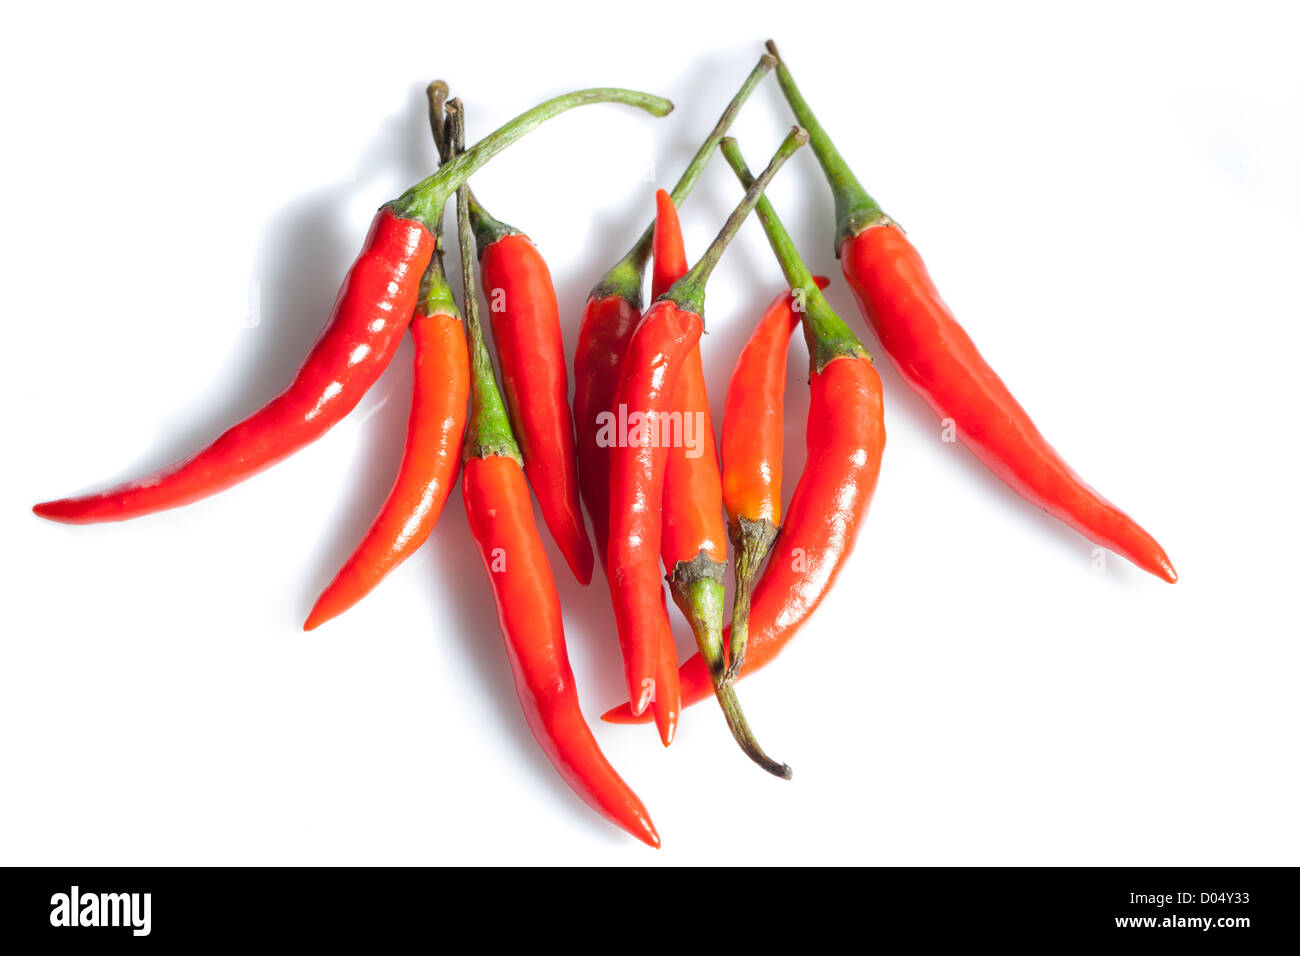 'Piri piri' Chili pepper, Tabascopeppar (Capsicum frutescens) Stock Photo